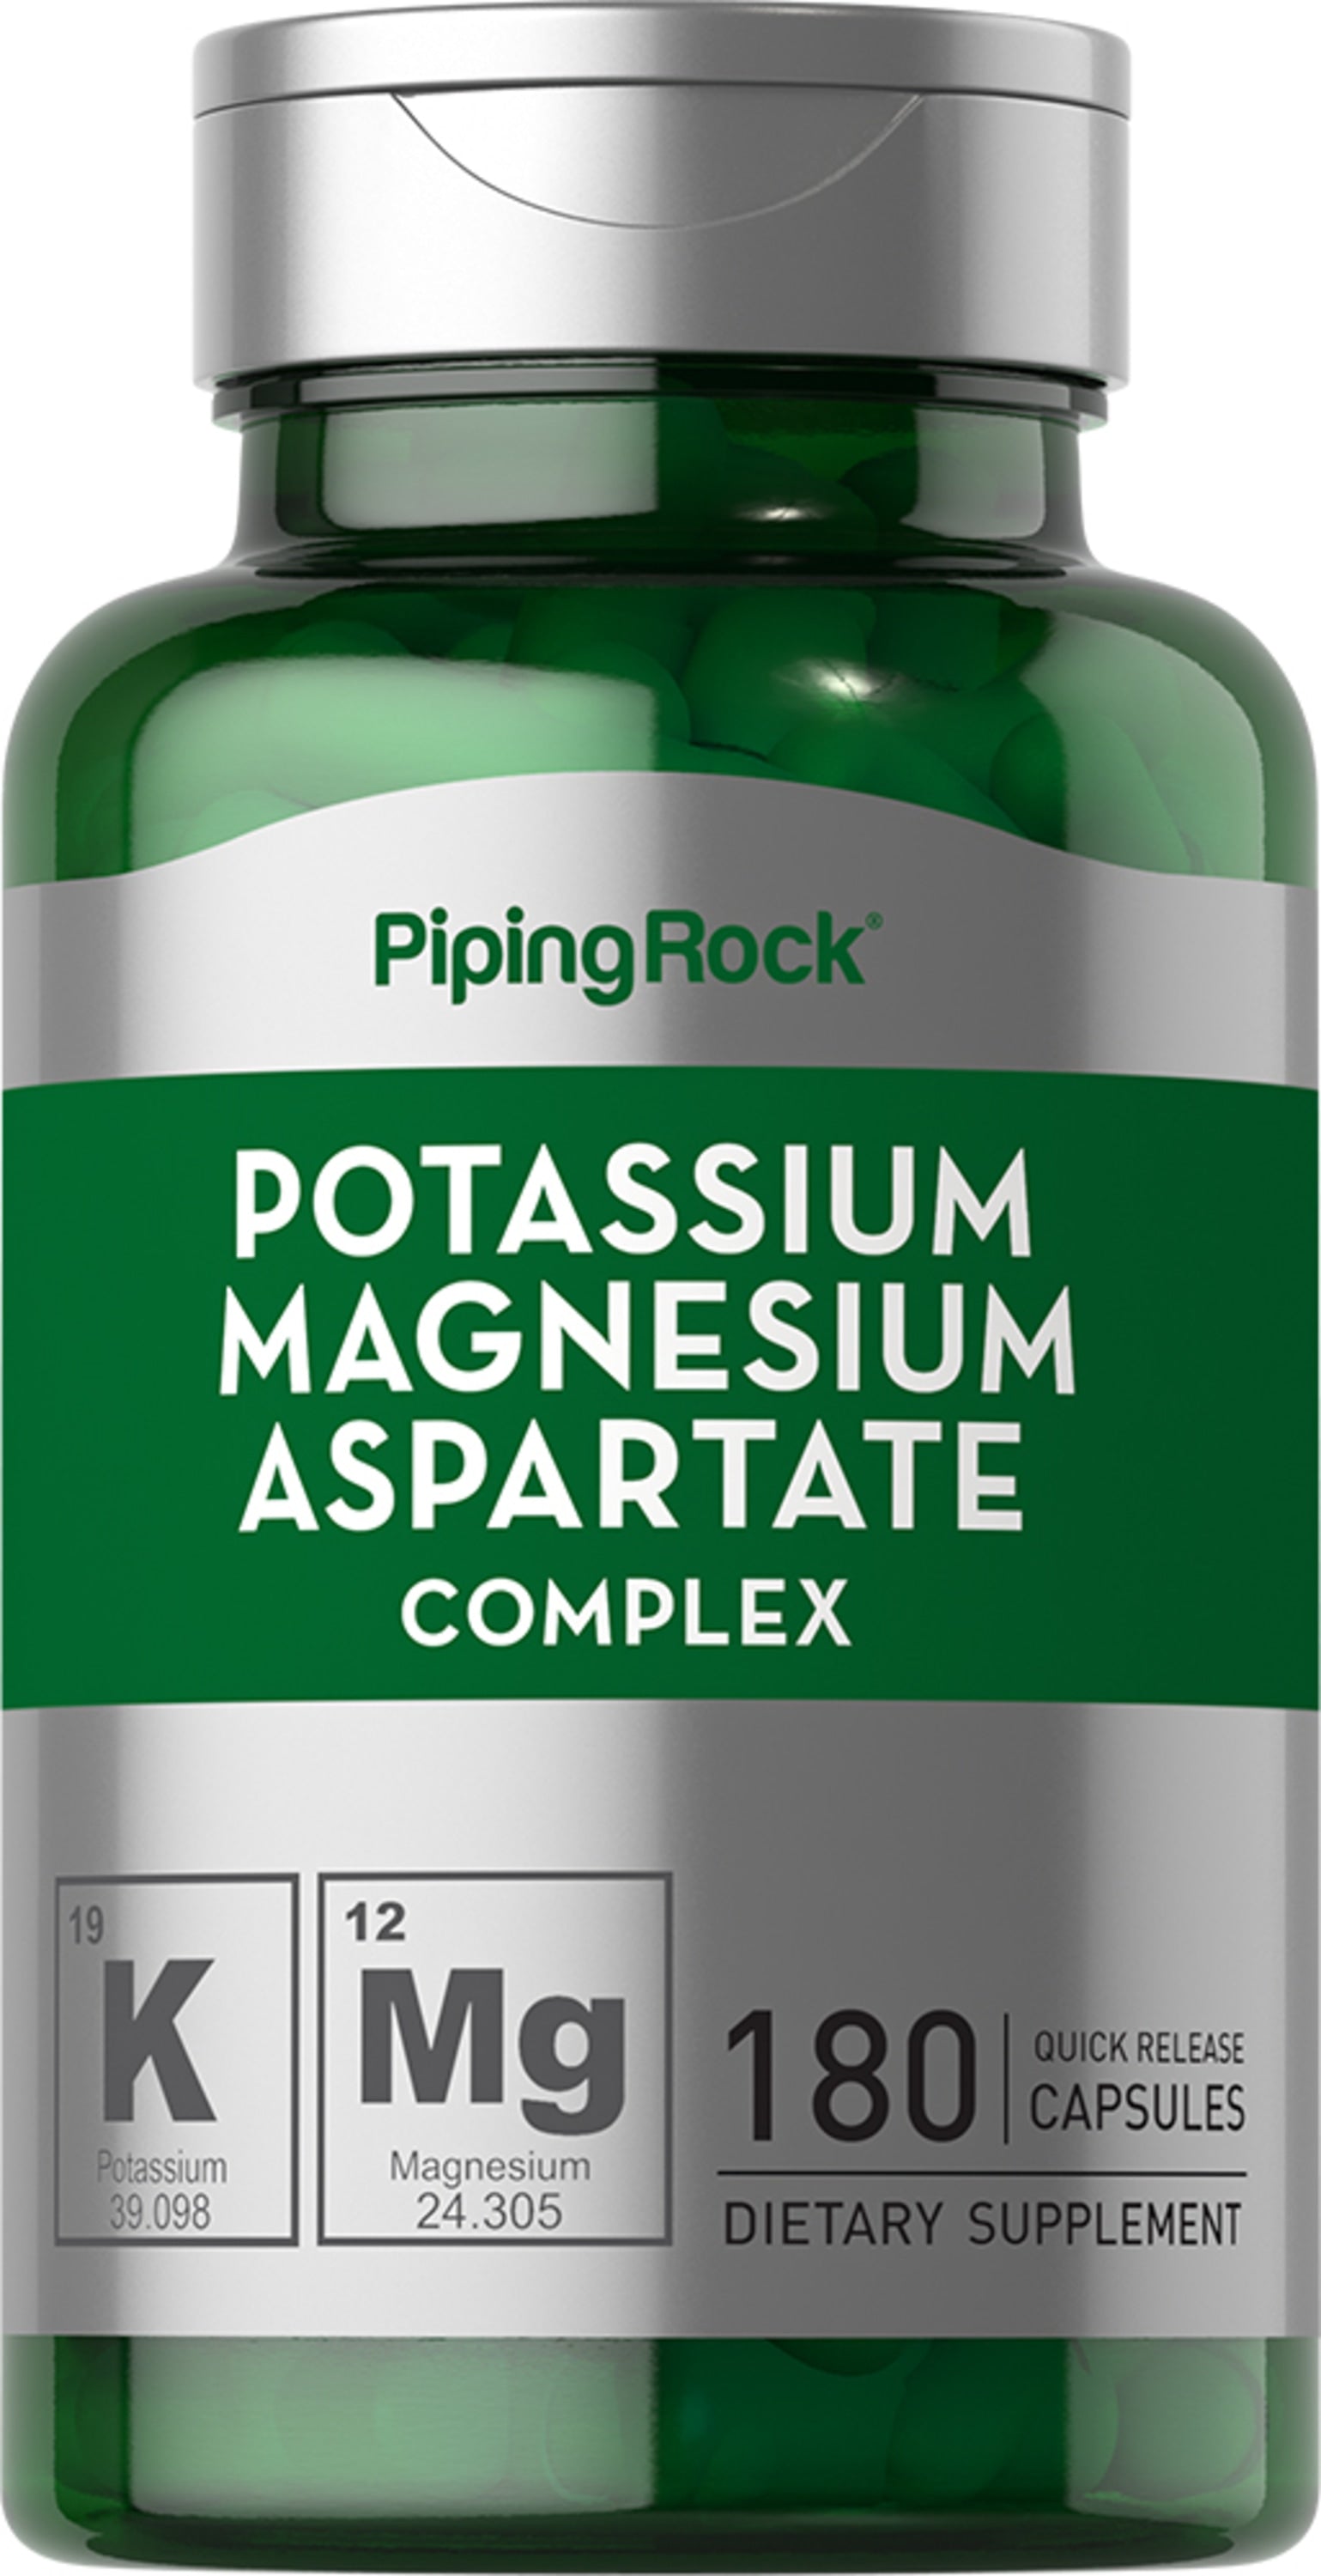 Potassium Magnesium Aspartate Complex, 99 mg/180 mg , 180 Quick Release Capsules